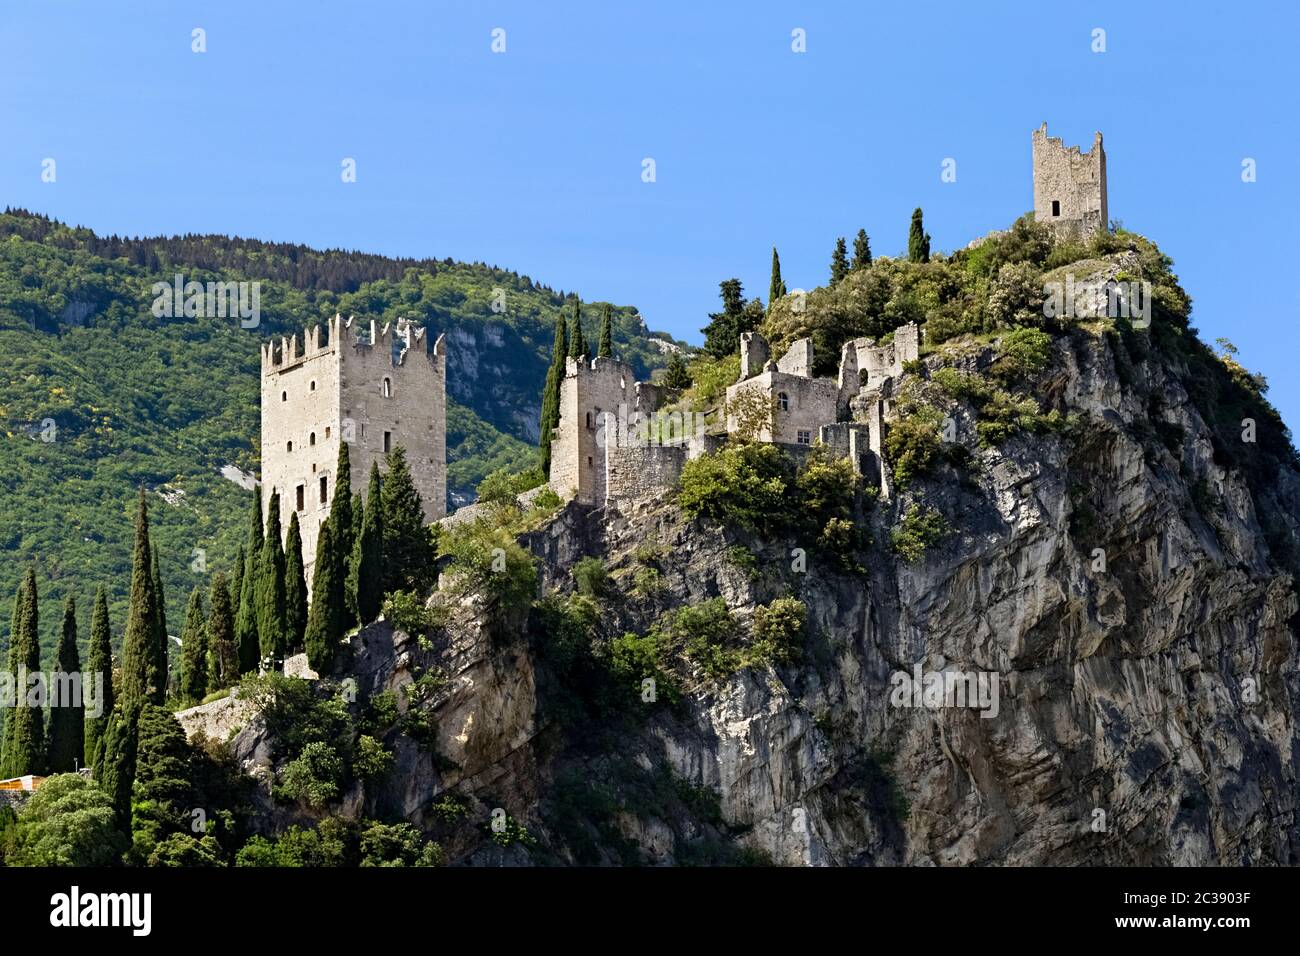 Le château d'Arco est perché sur une colline rocheuse. Province de Trento, Trentin-Haut-Adige, Italie, Europe. Banque D'Images